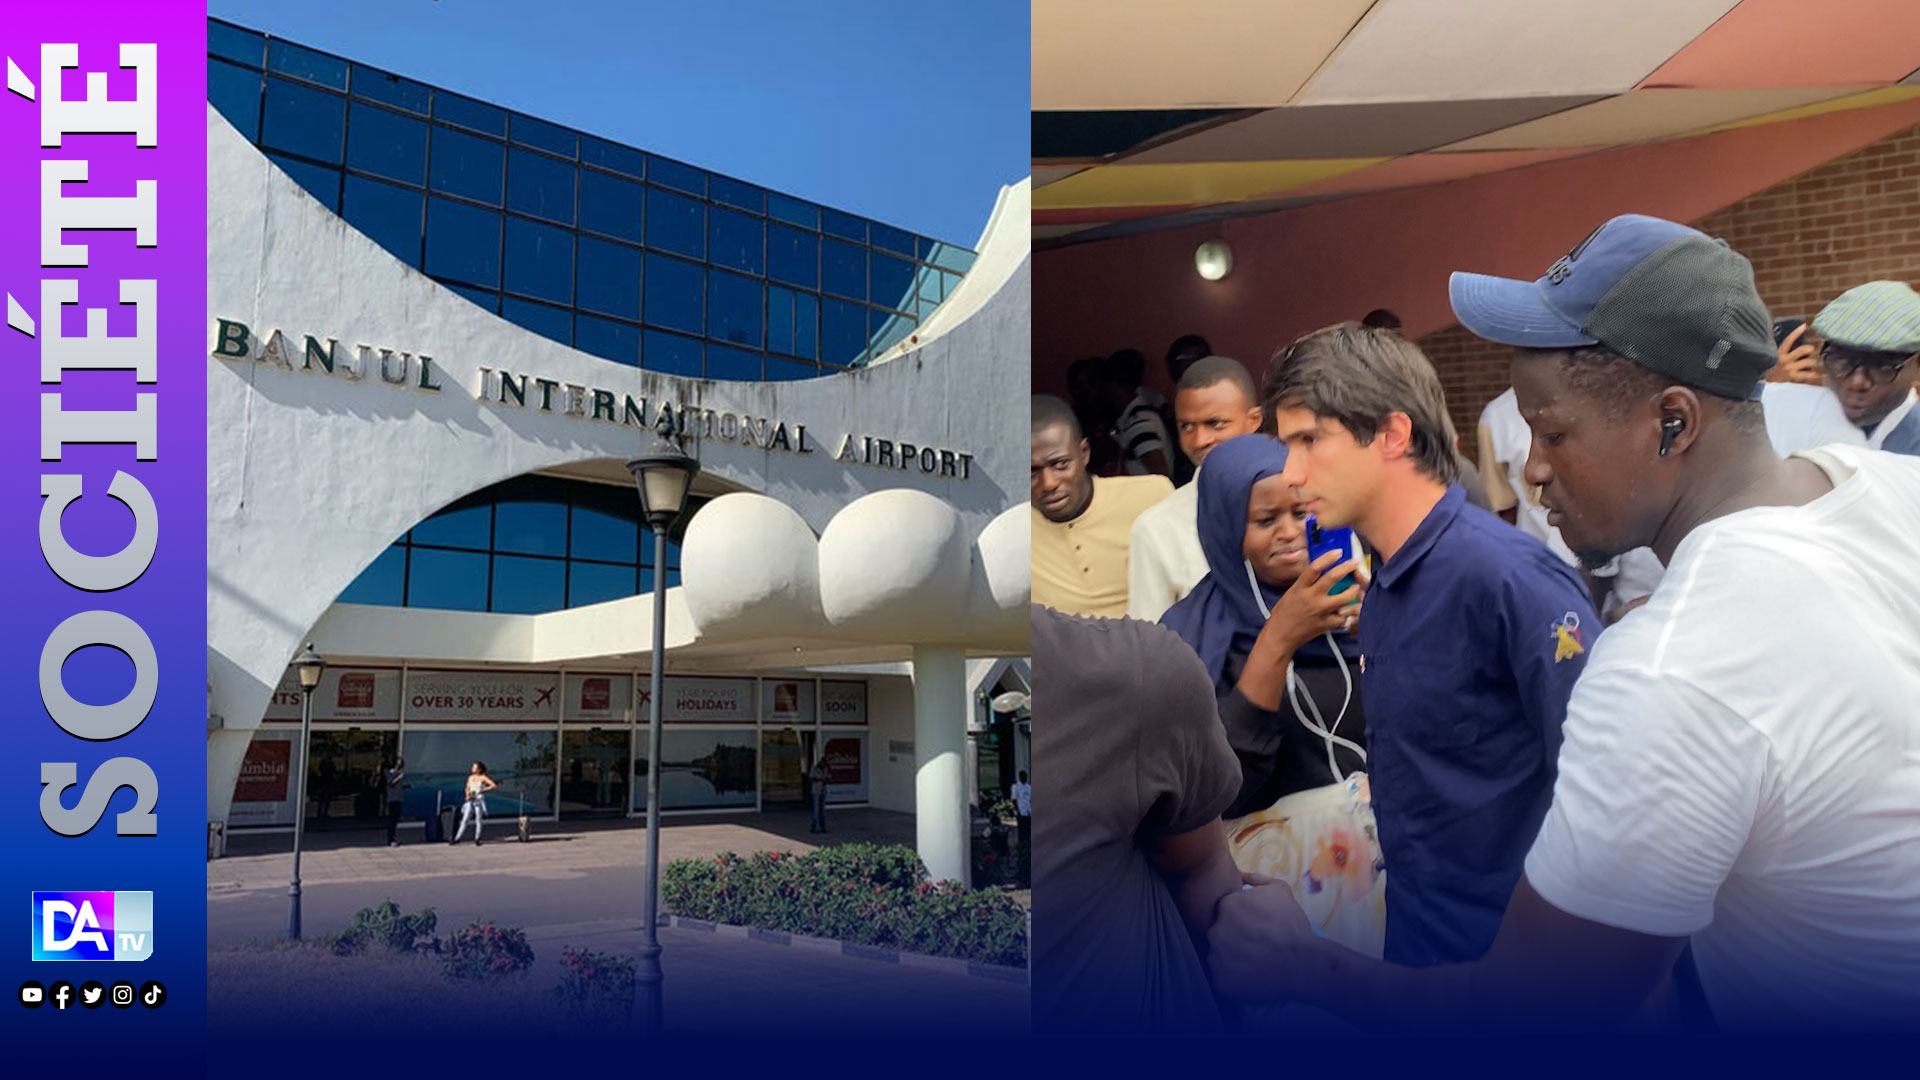 Juan Branco à Dakar : L’avocat Franco-espagnol est passé par la Gambie pour entrer au Sénégal